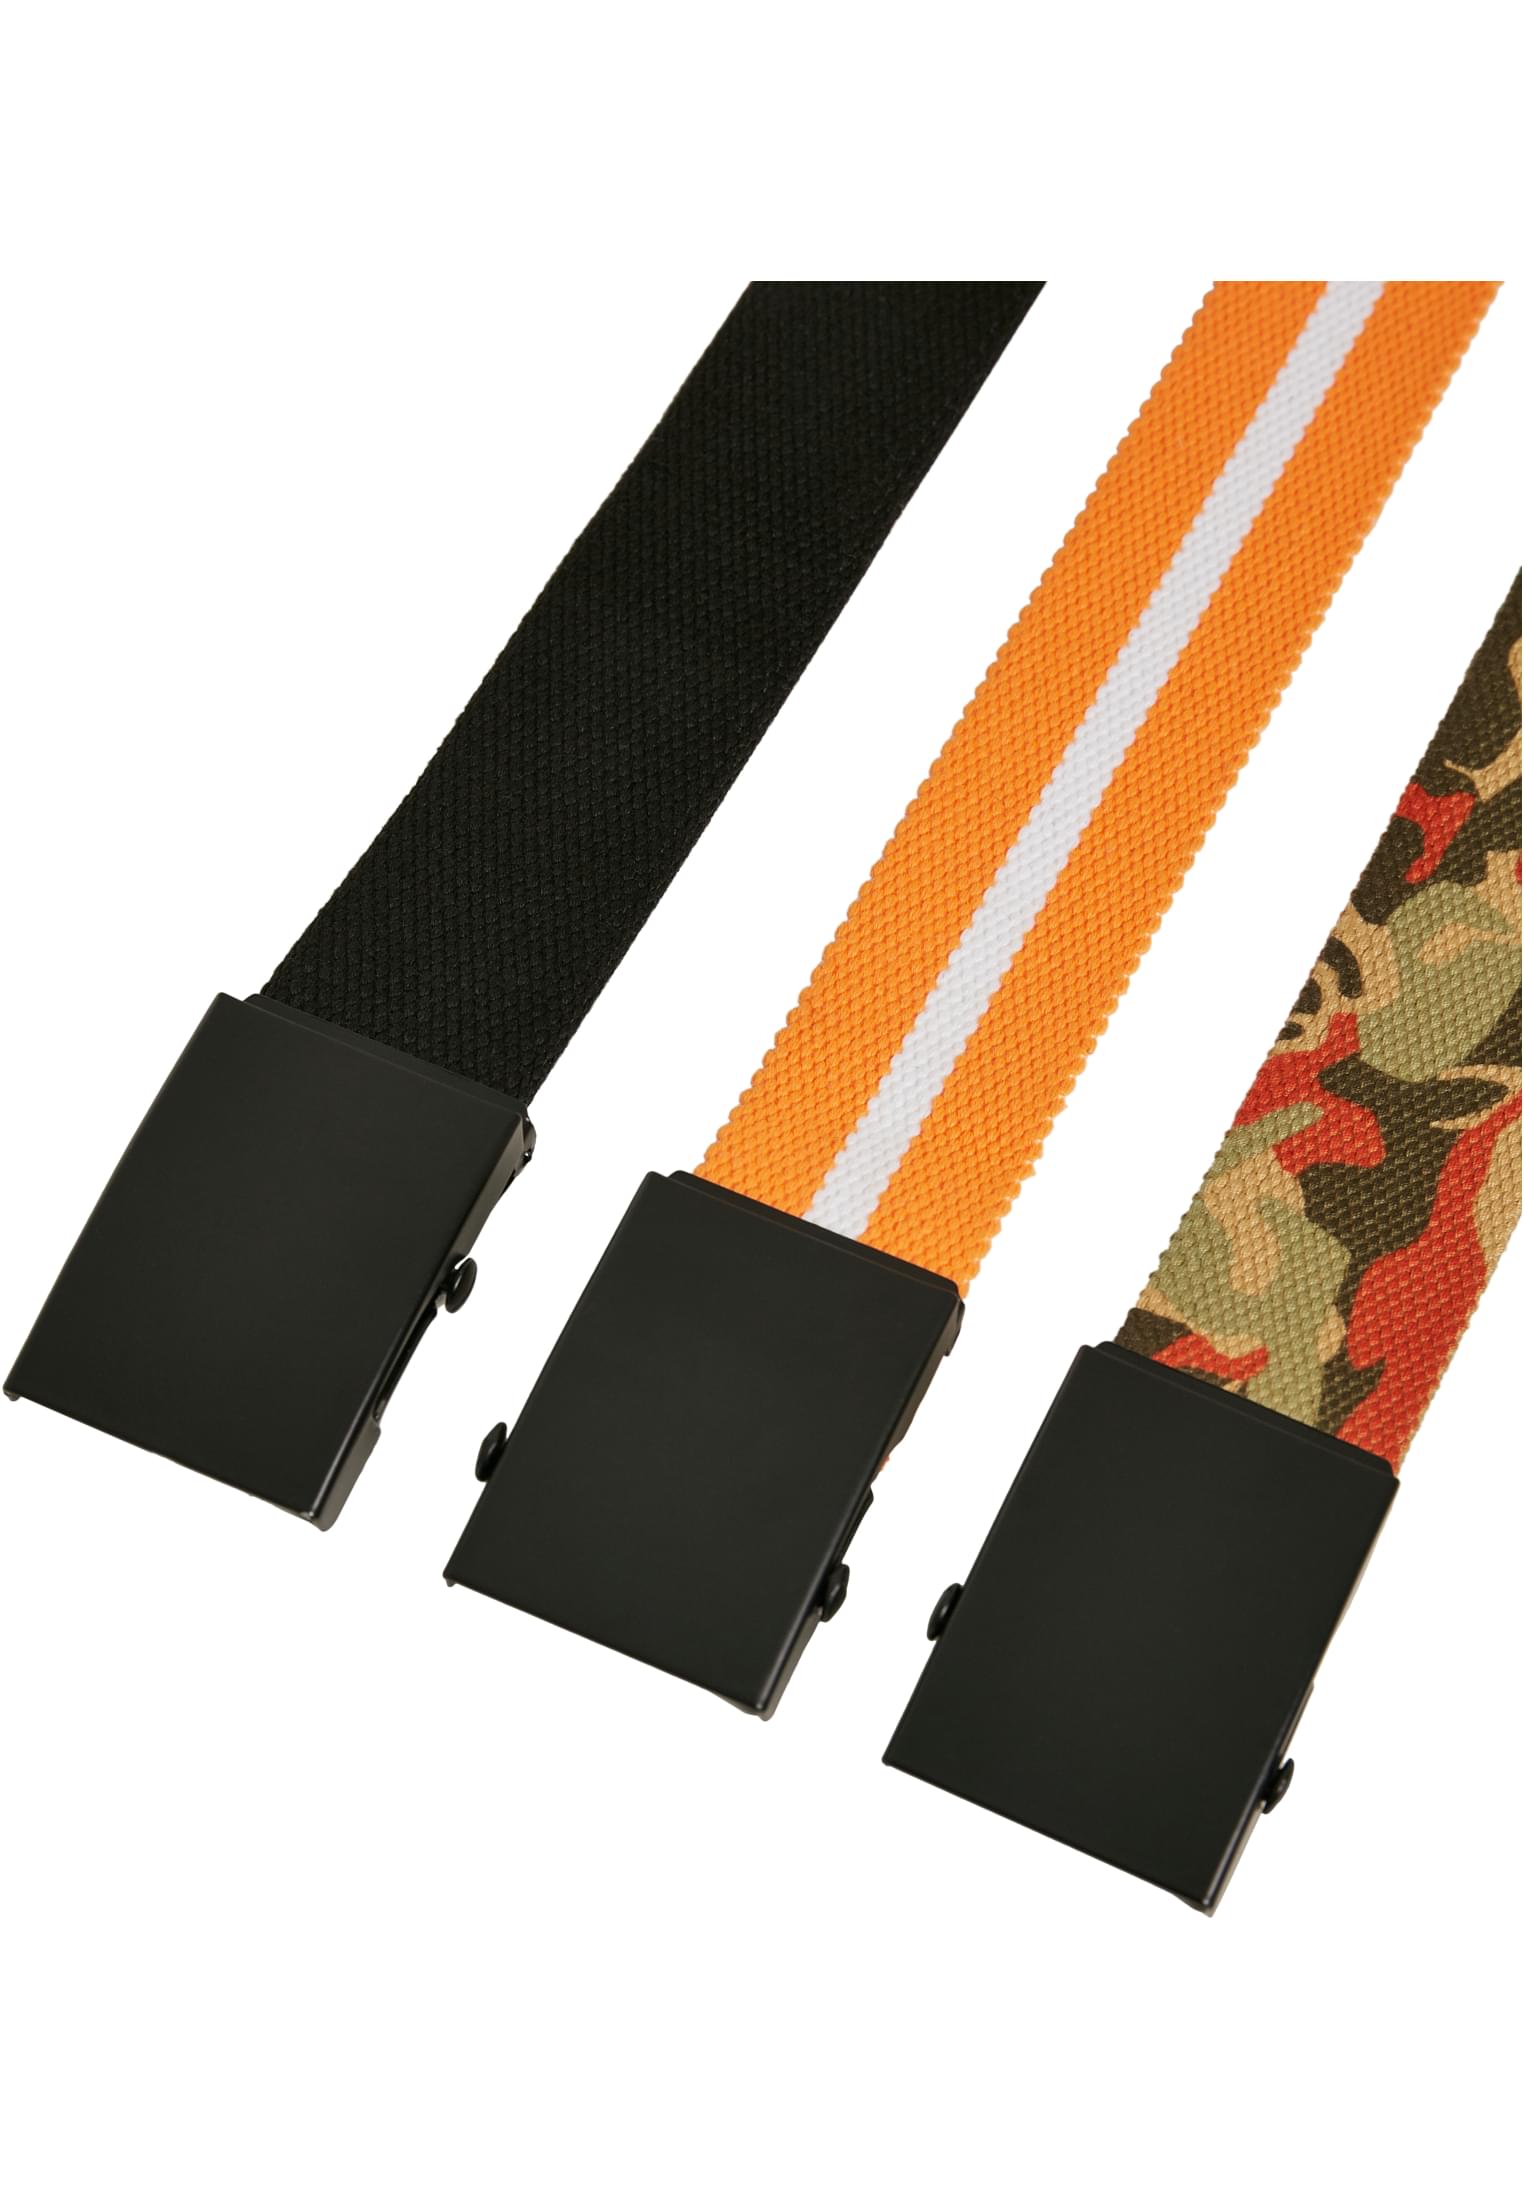 Accessories Belts Trio in Farbe blk/blk+or.camo/blk+or.wht/blk